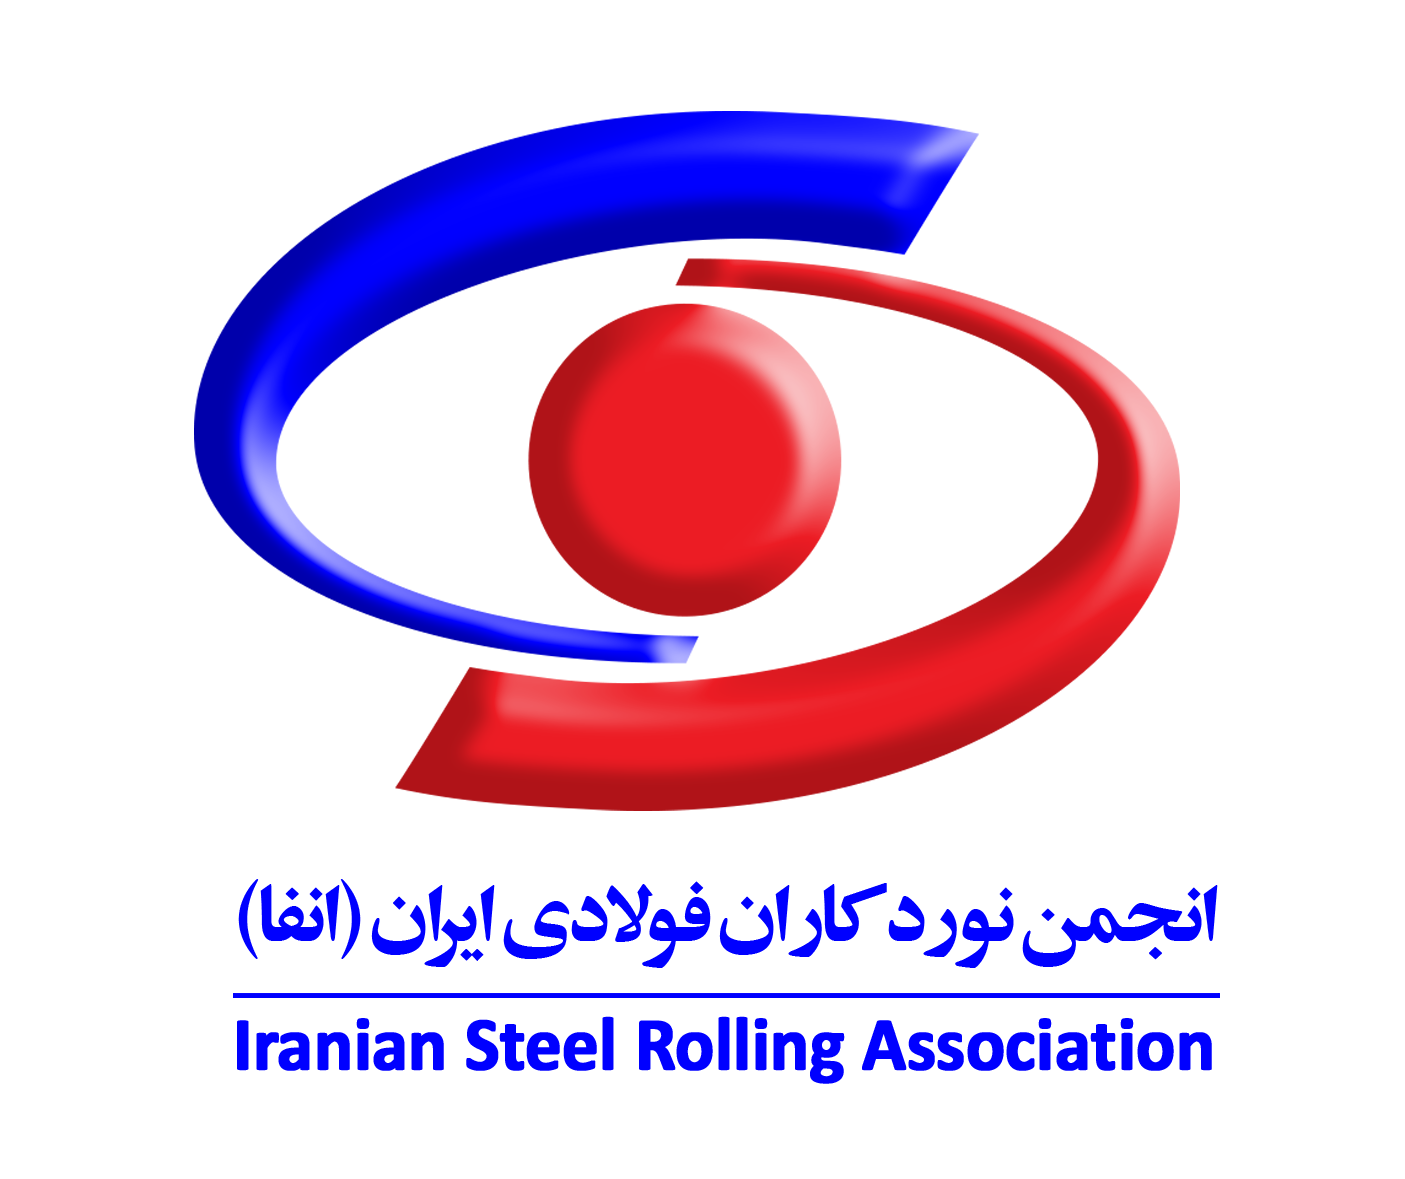 انجمن نوردکاران فولادی ایران